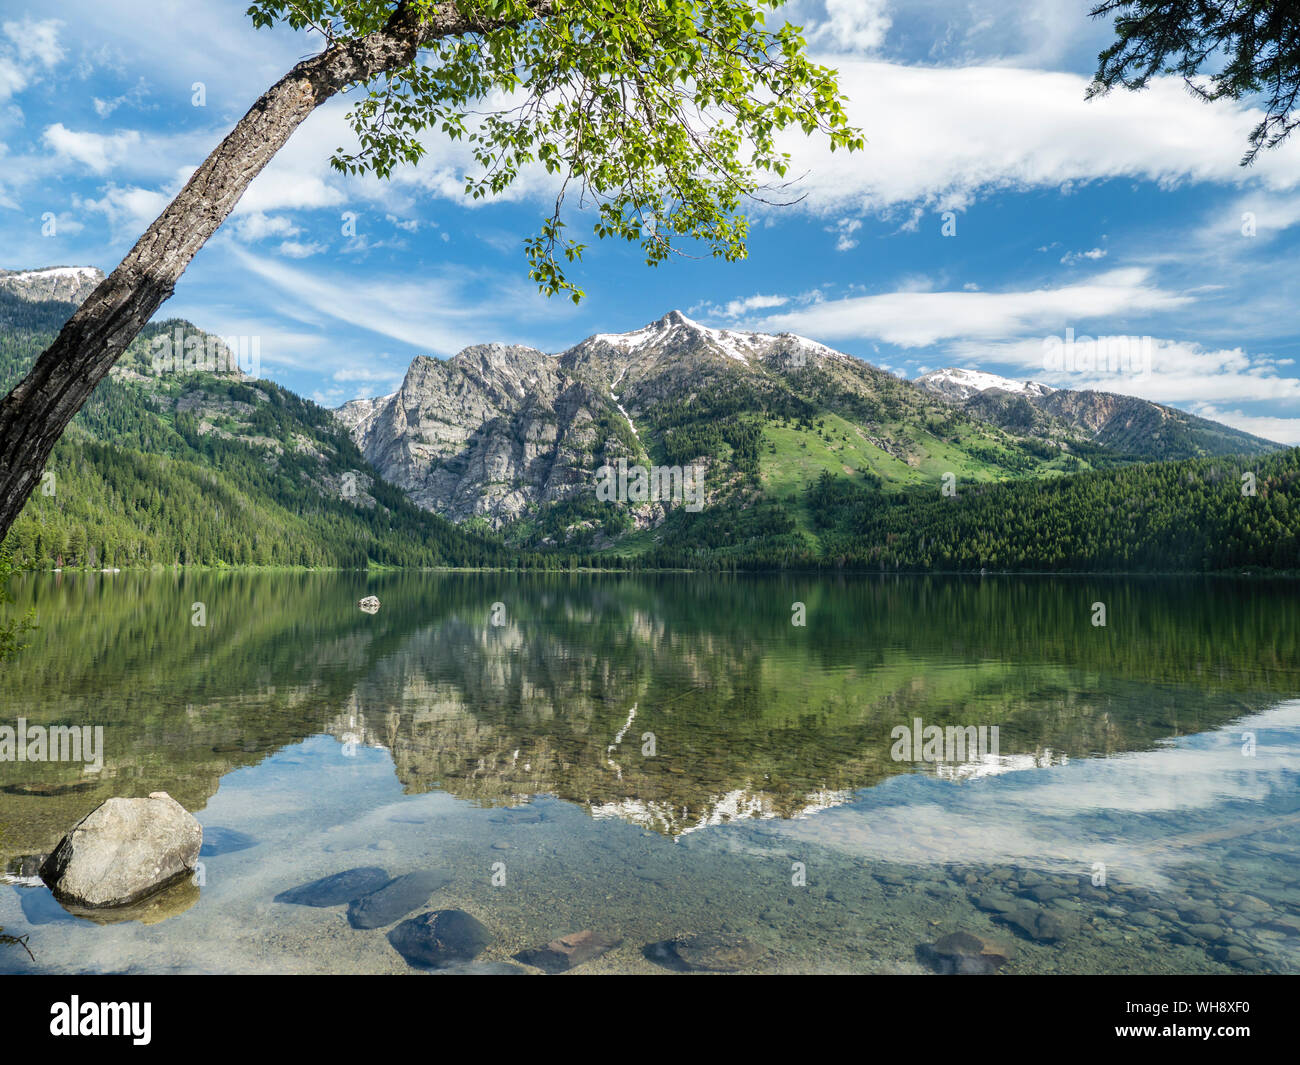 Montagne innevate si riflette nelle calme acque del lago Phelps, Grand Teton National Park, Wyoming negli Stati Uniti d'America, America del Nord Foto Stock